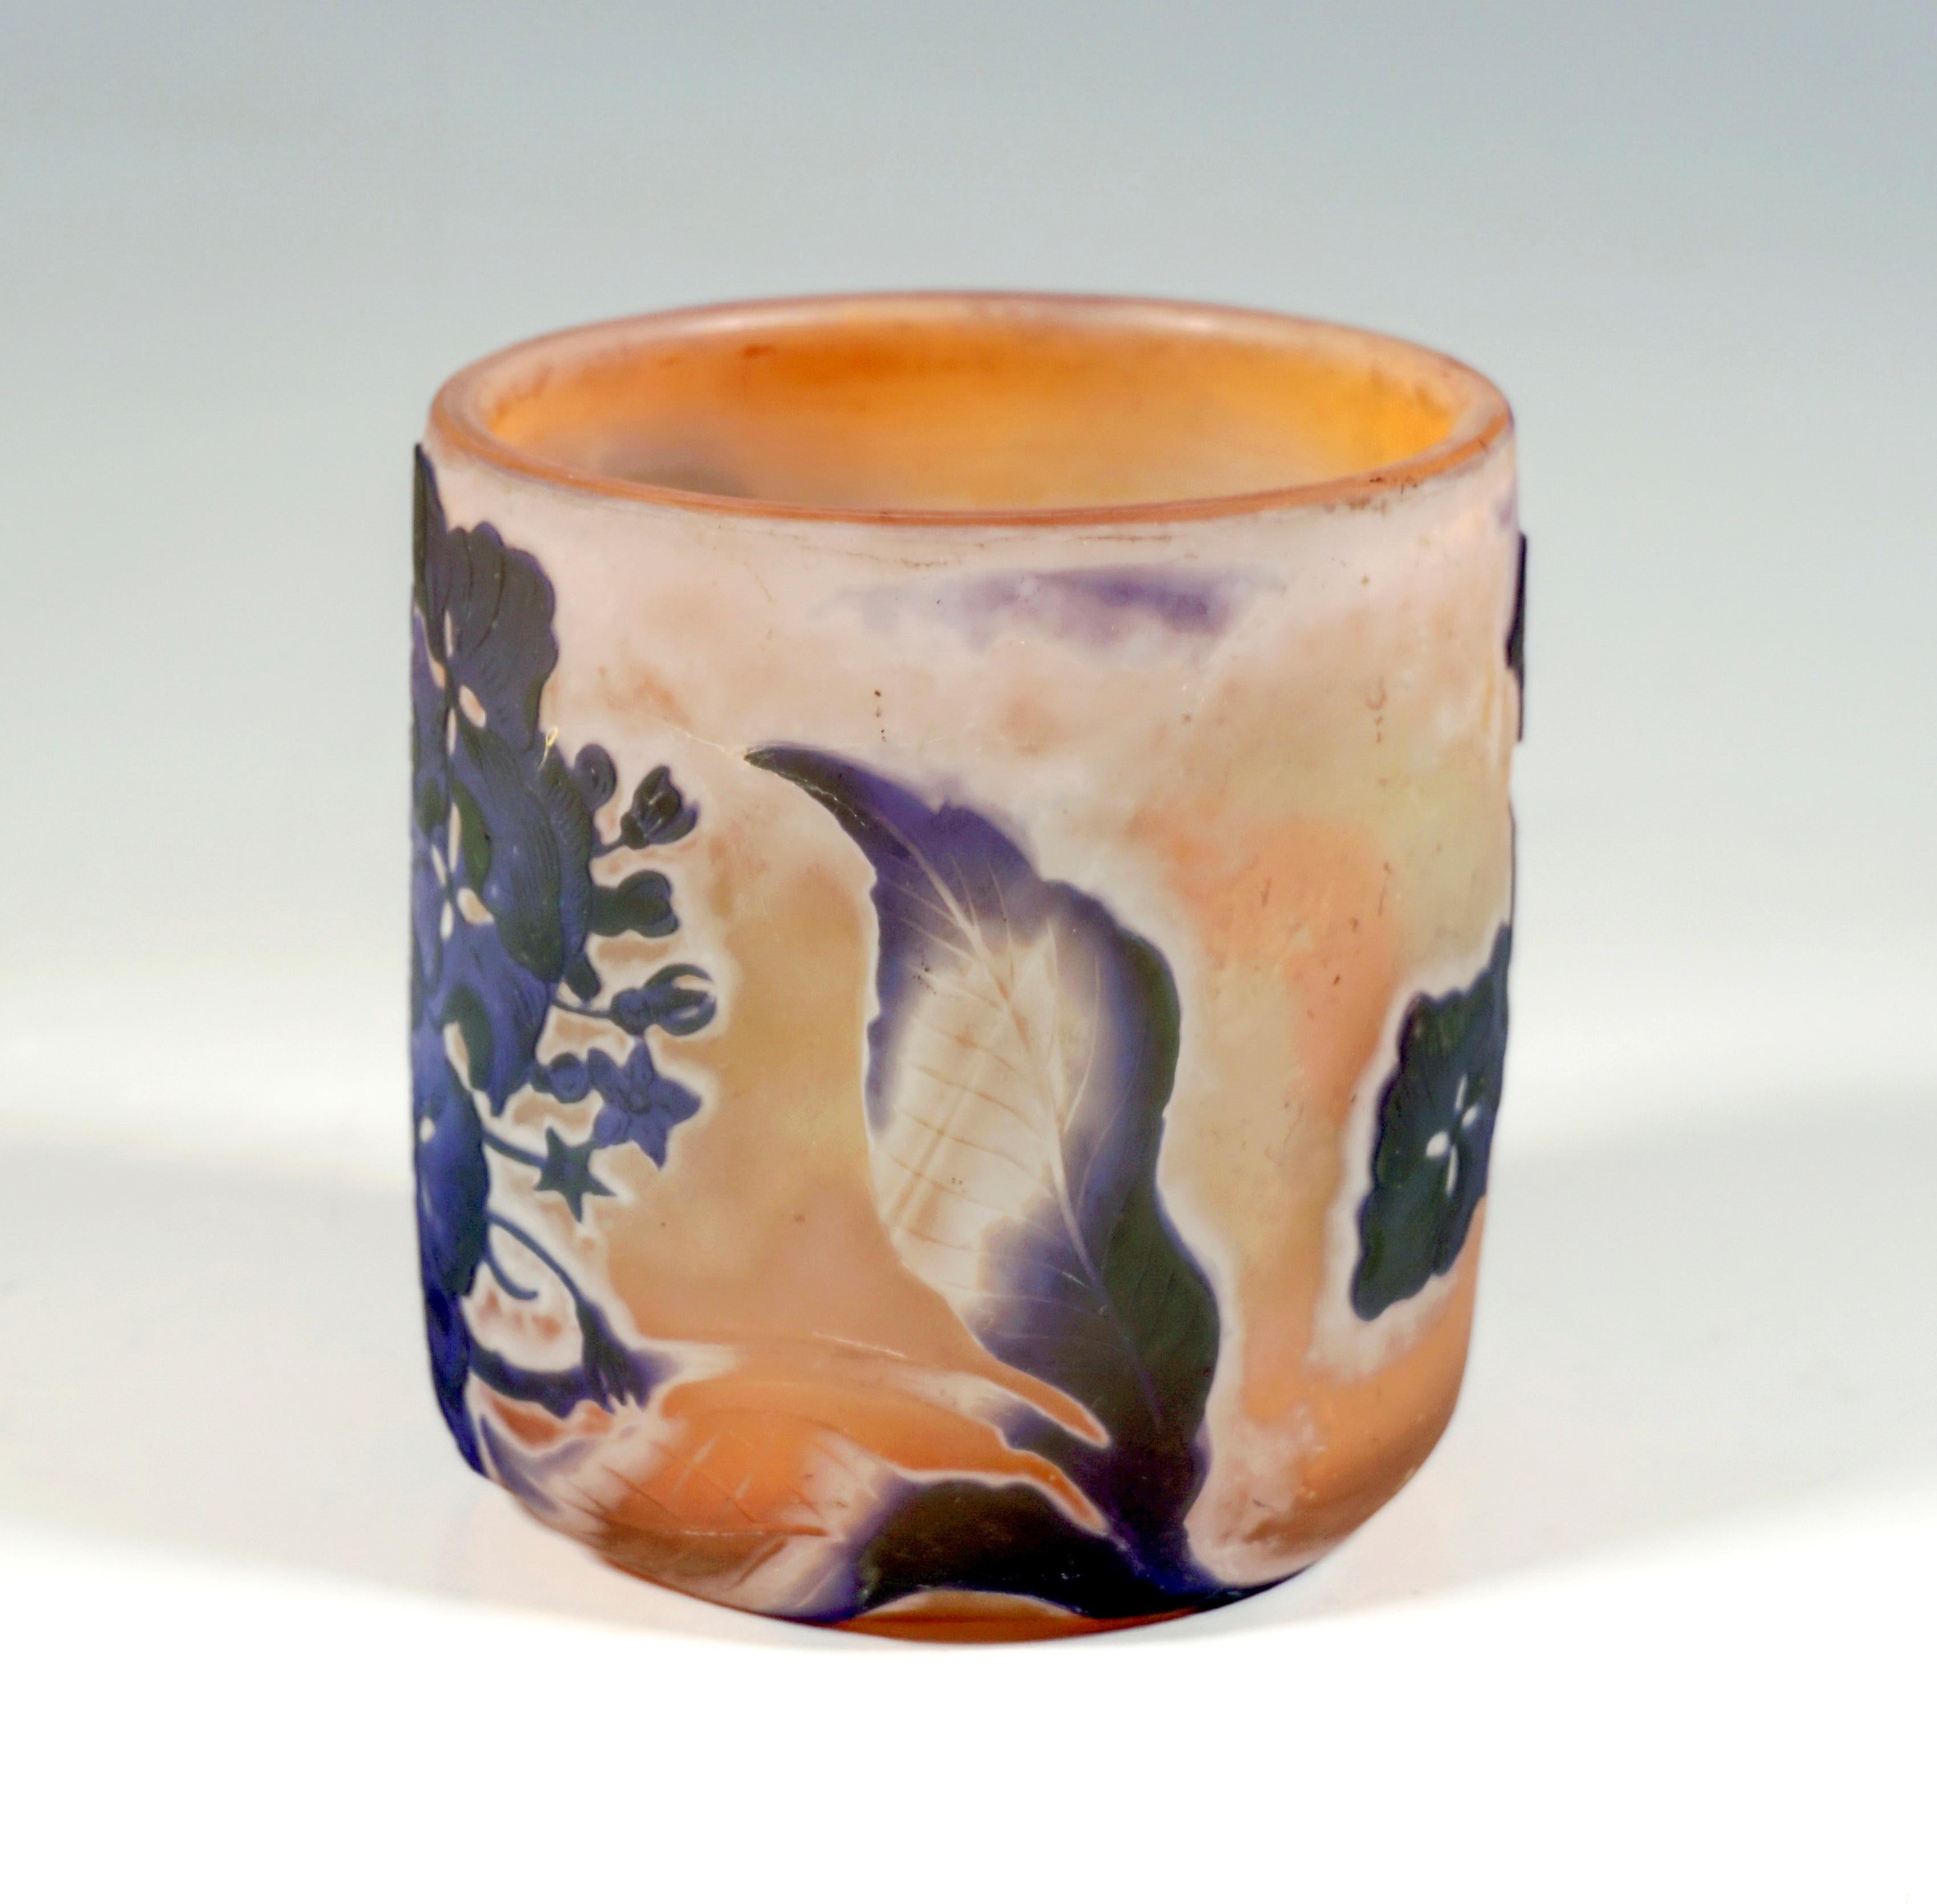 Becherförmige Vase mit gerader Wandung und flächenbündigem Stand, farbloses Glas mit rötlich-gelben Farbeinschmelzungen, außen überfangen in Moosgrün und Violett, innen geätzter Hortensien-Dekor in verschiedenen Stufen und Einzelblüten, Oberflächen